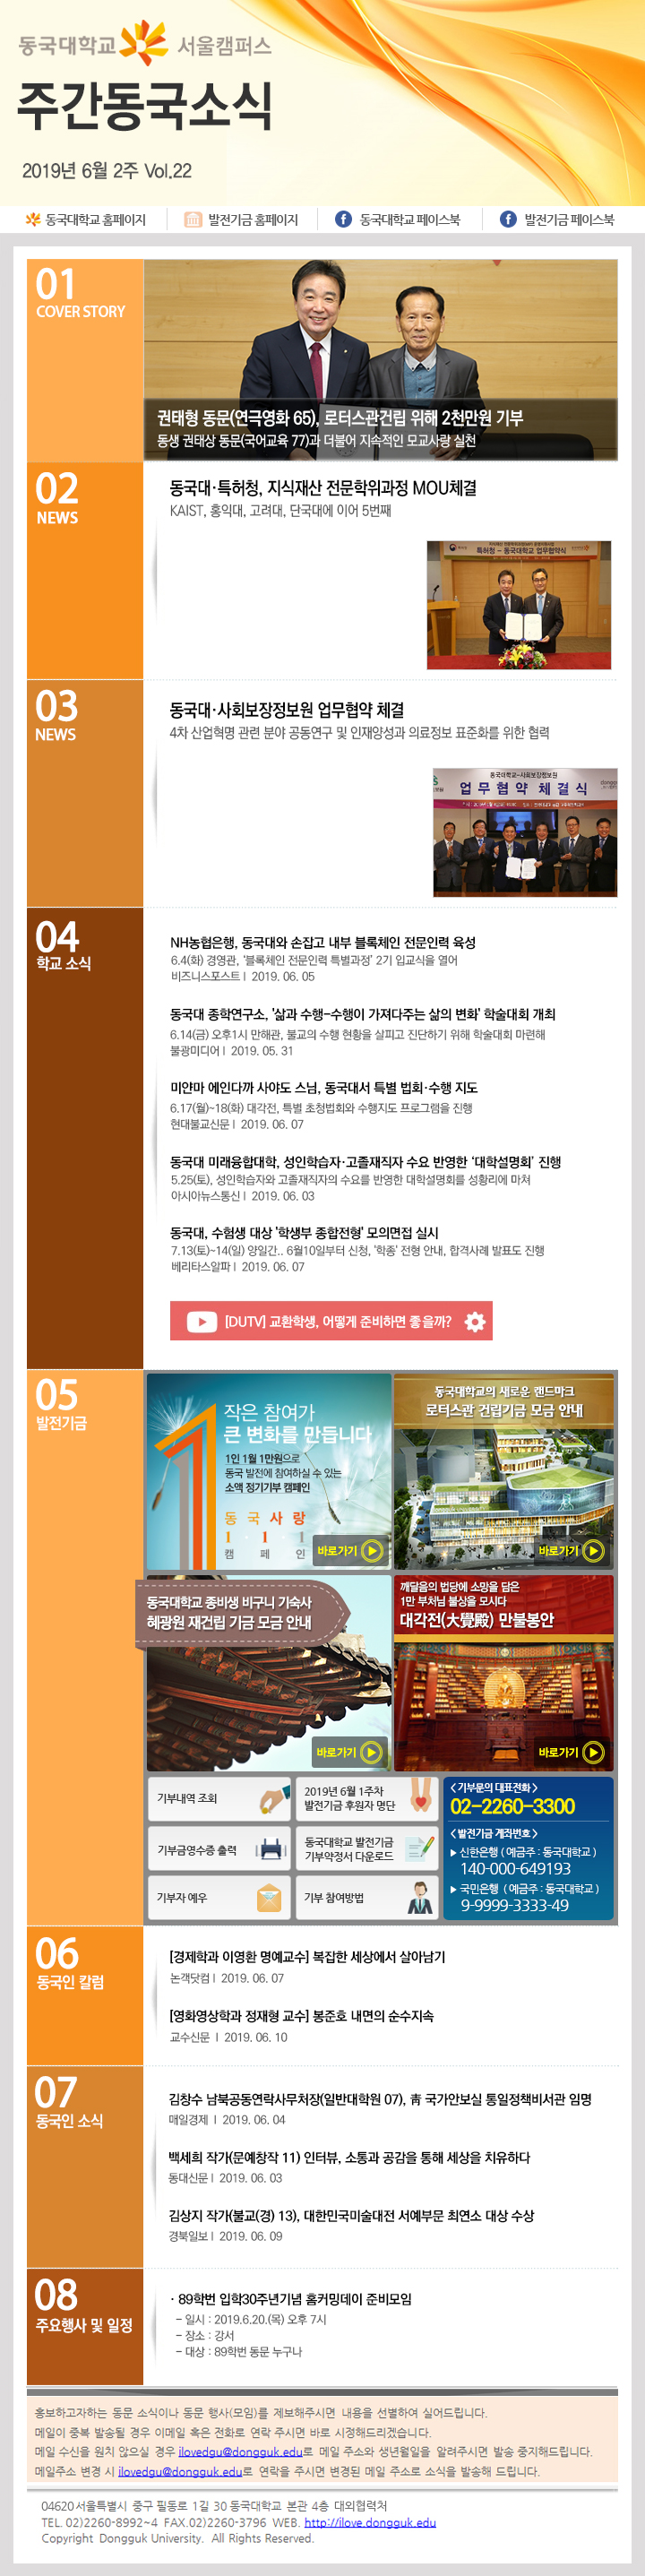 동국웹진 2019년 6월 2주 - 자세한 내용은 첨부파일로 확인하세요.